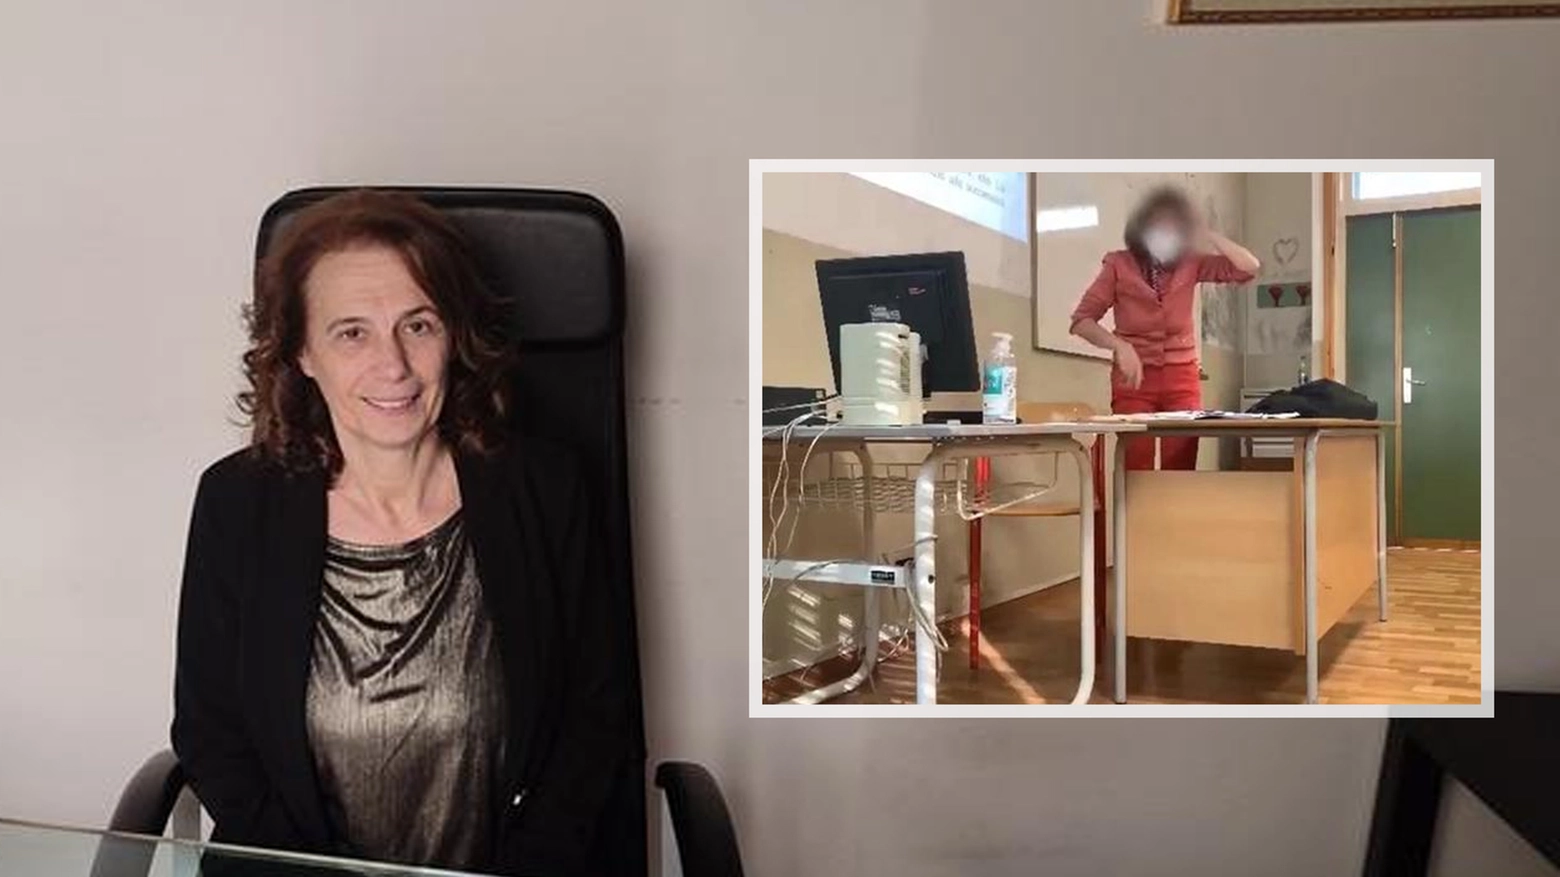 La docente Maria Luisa Finatti e un fermo immagine tratto dal video dell'aggressione con dei proiettili di gomma